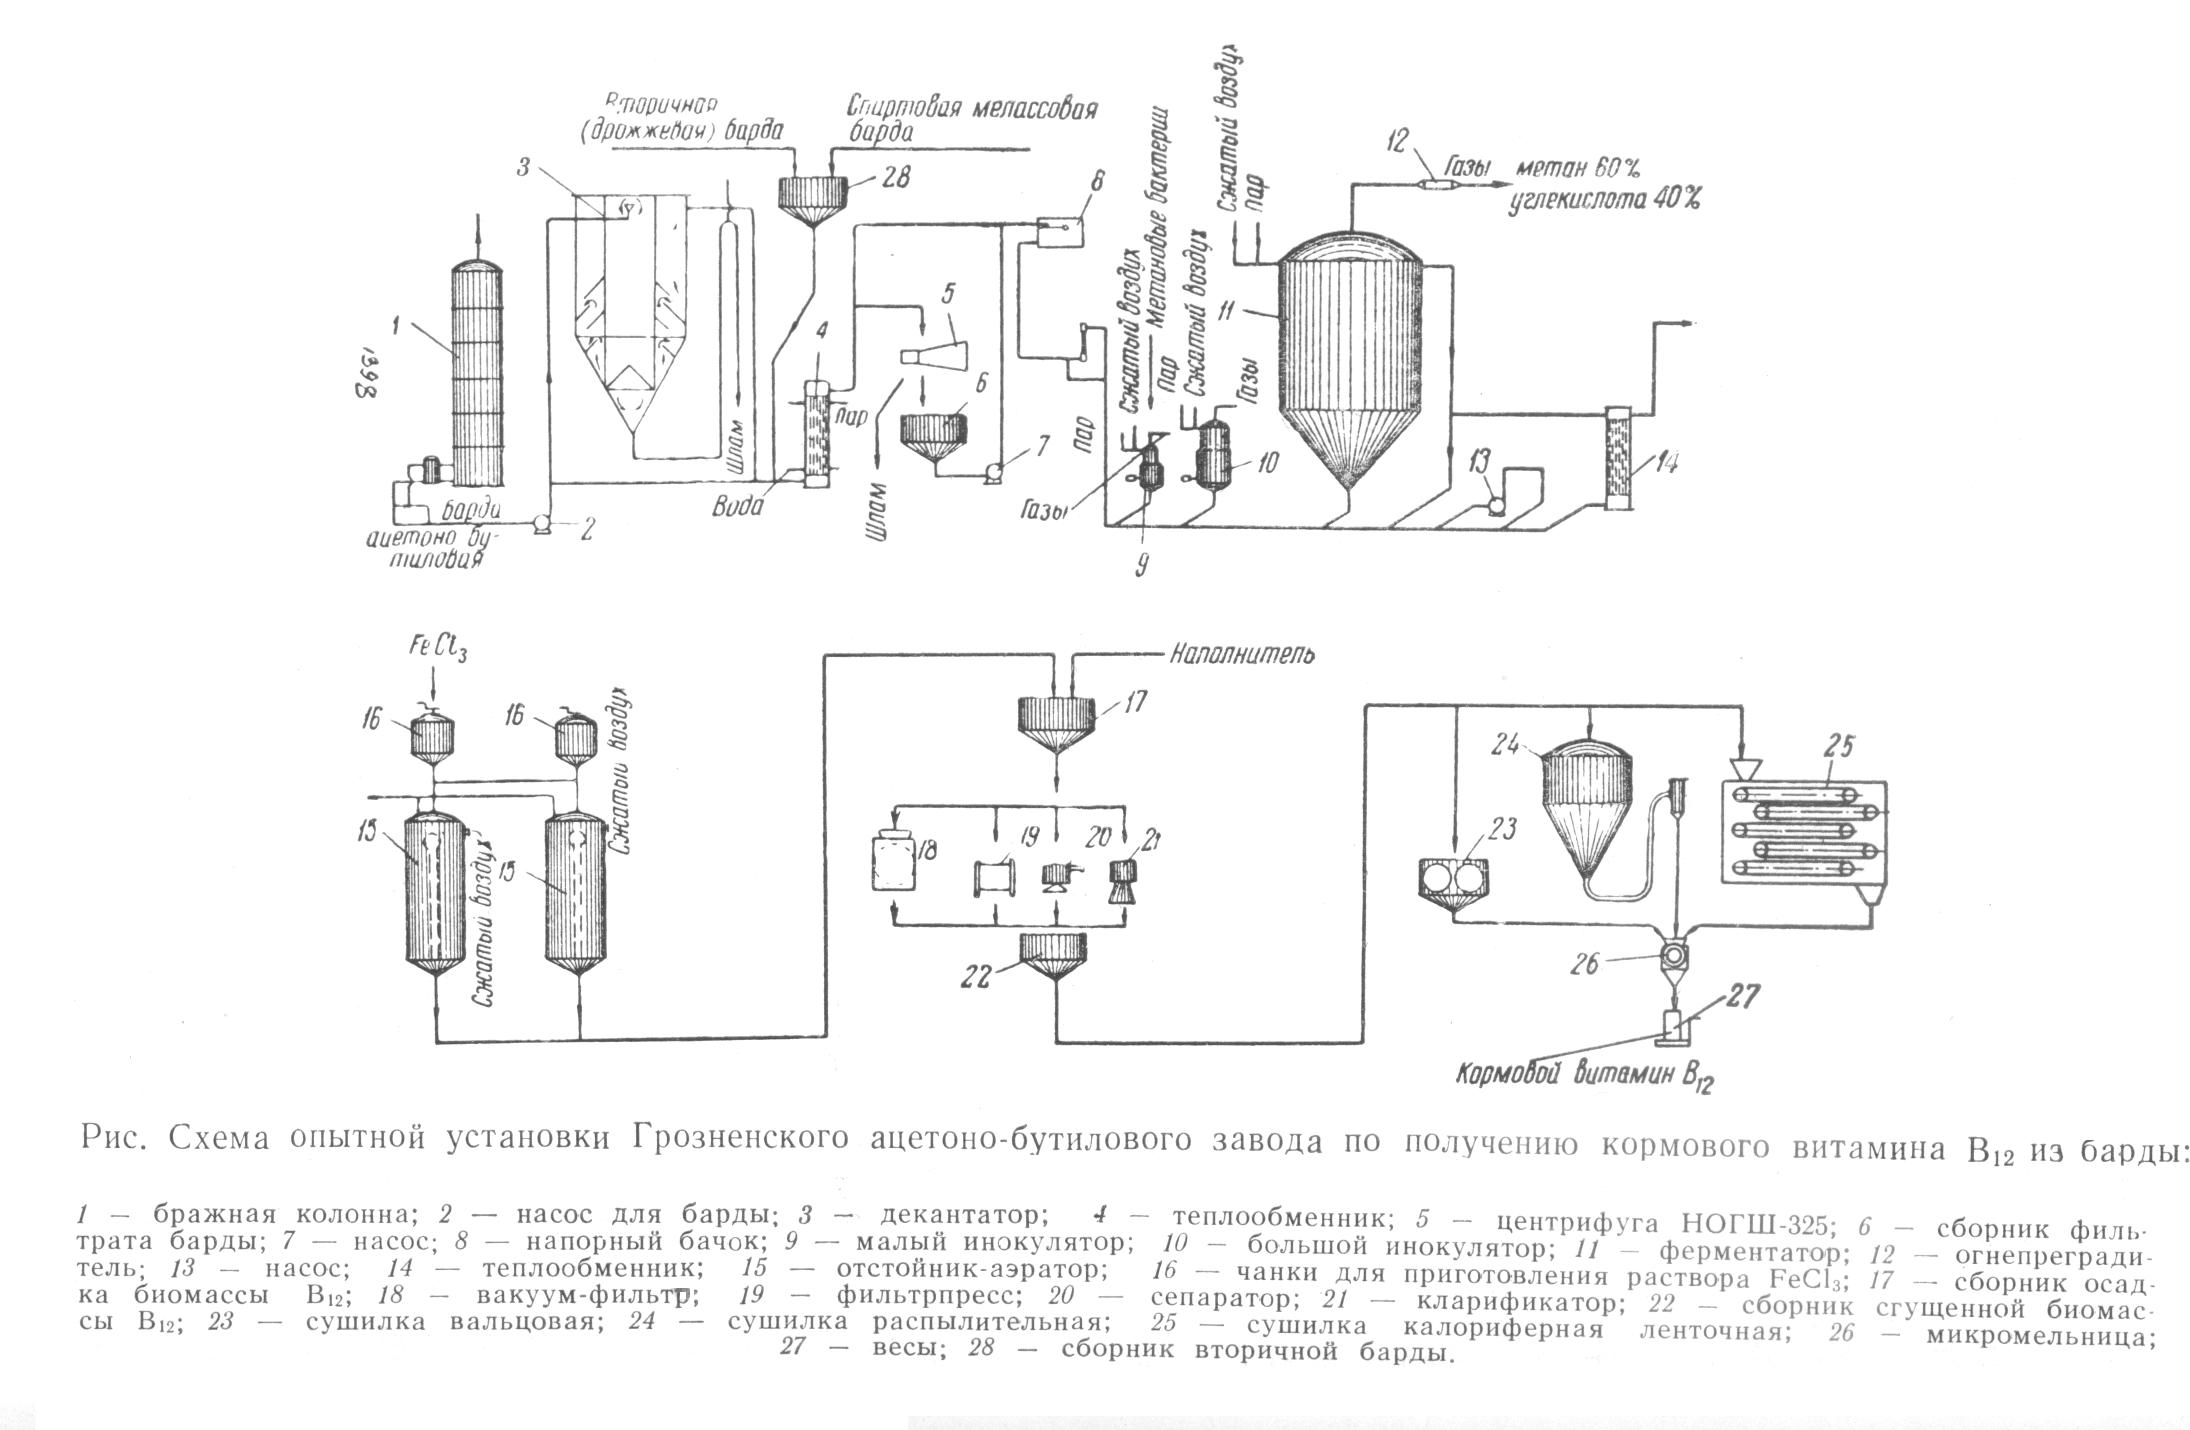 Схема установки для производства витамина В12 на ацетоно-бутиловом заводе